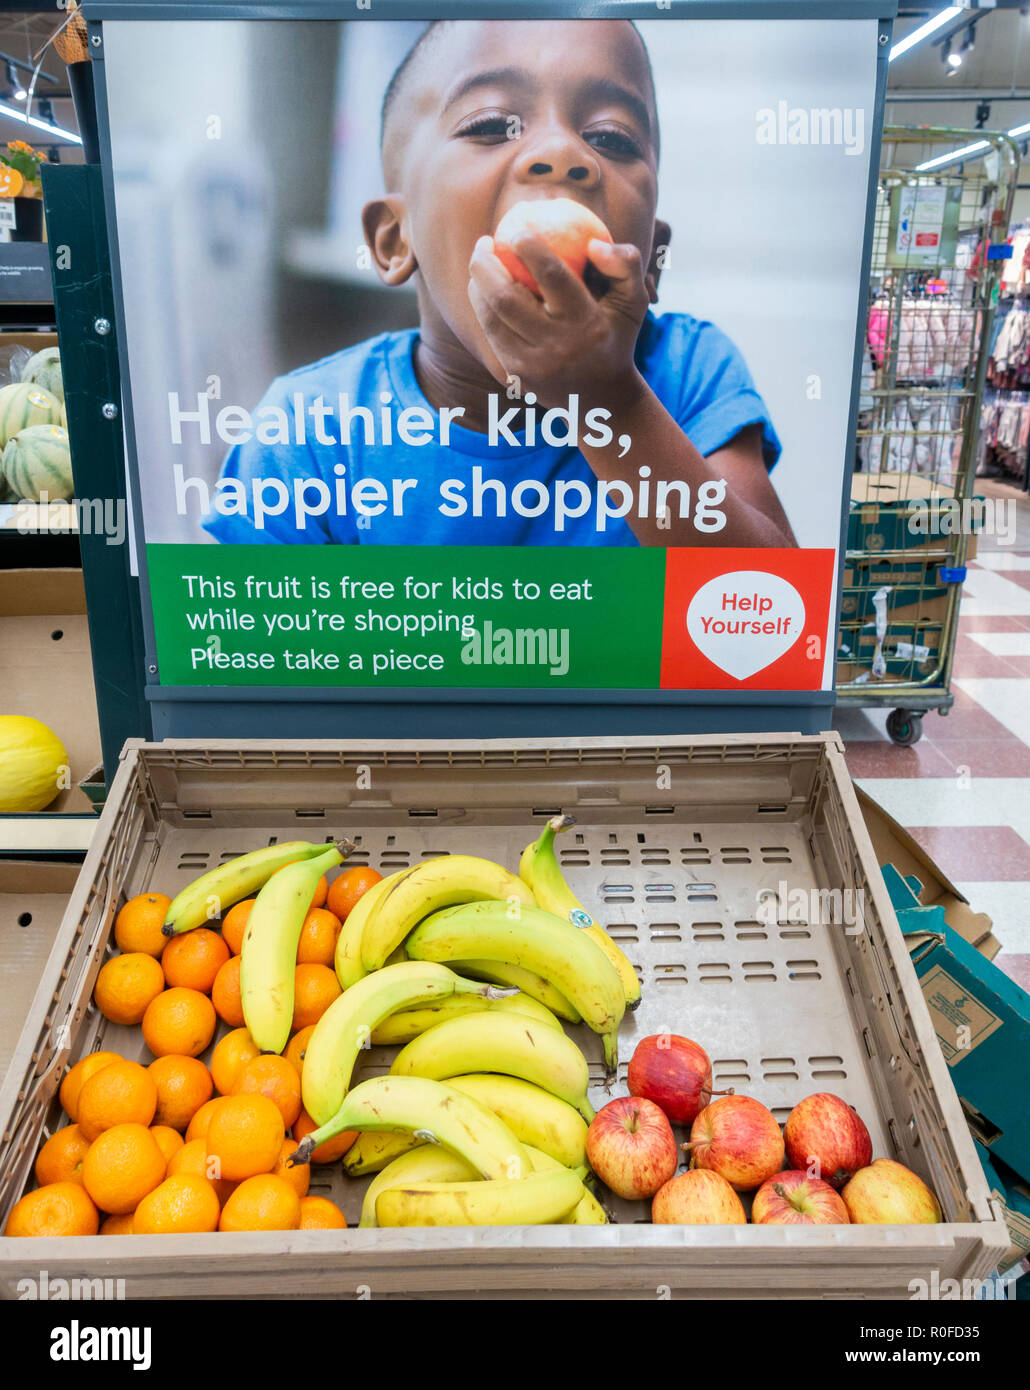 Free fruit for children in Tesco supermarket. UK Stock Photo